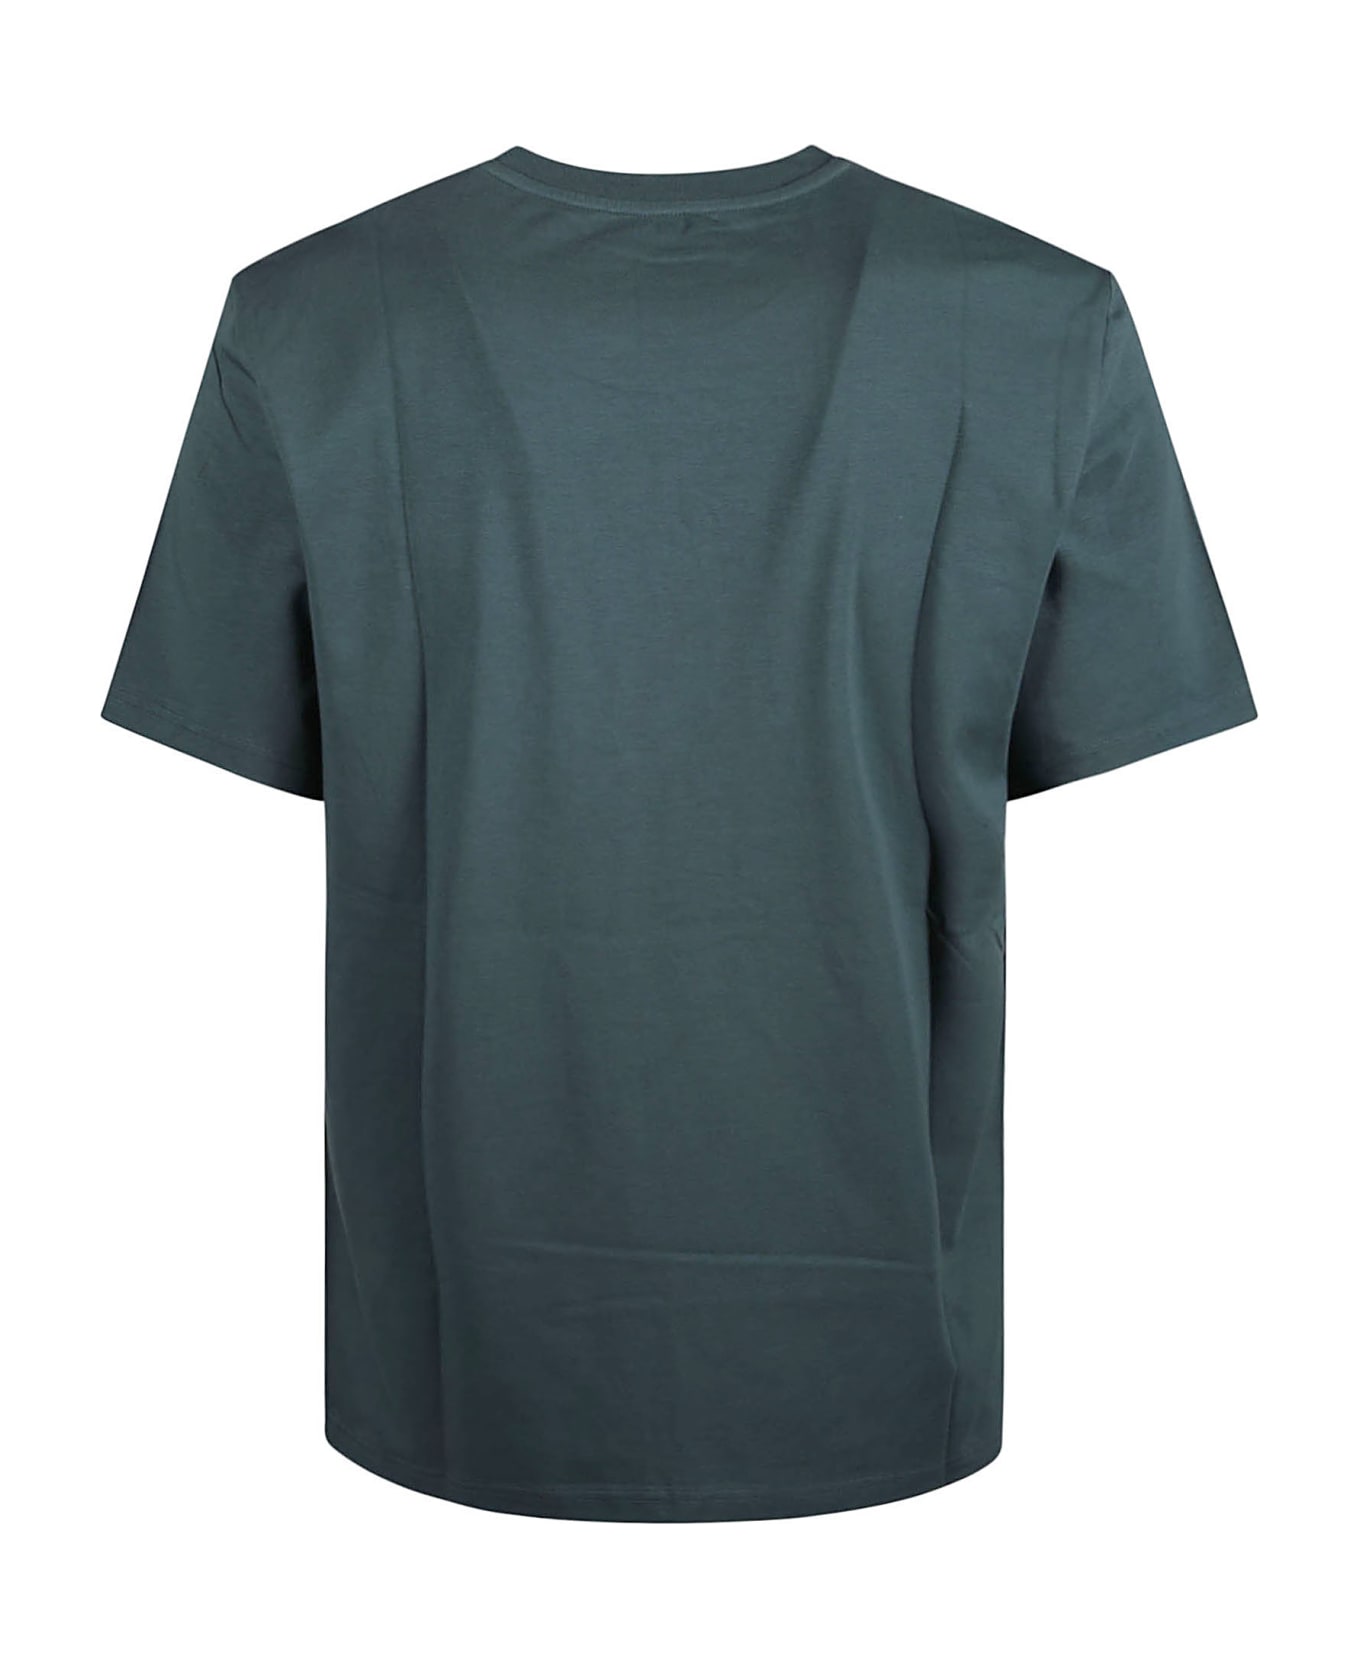 Moschino Logo T-shirt - Green